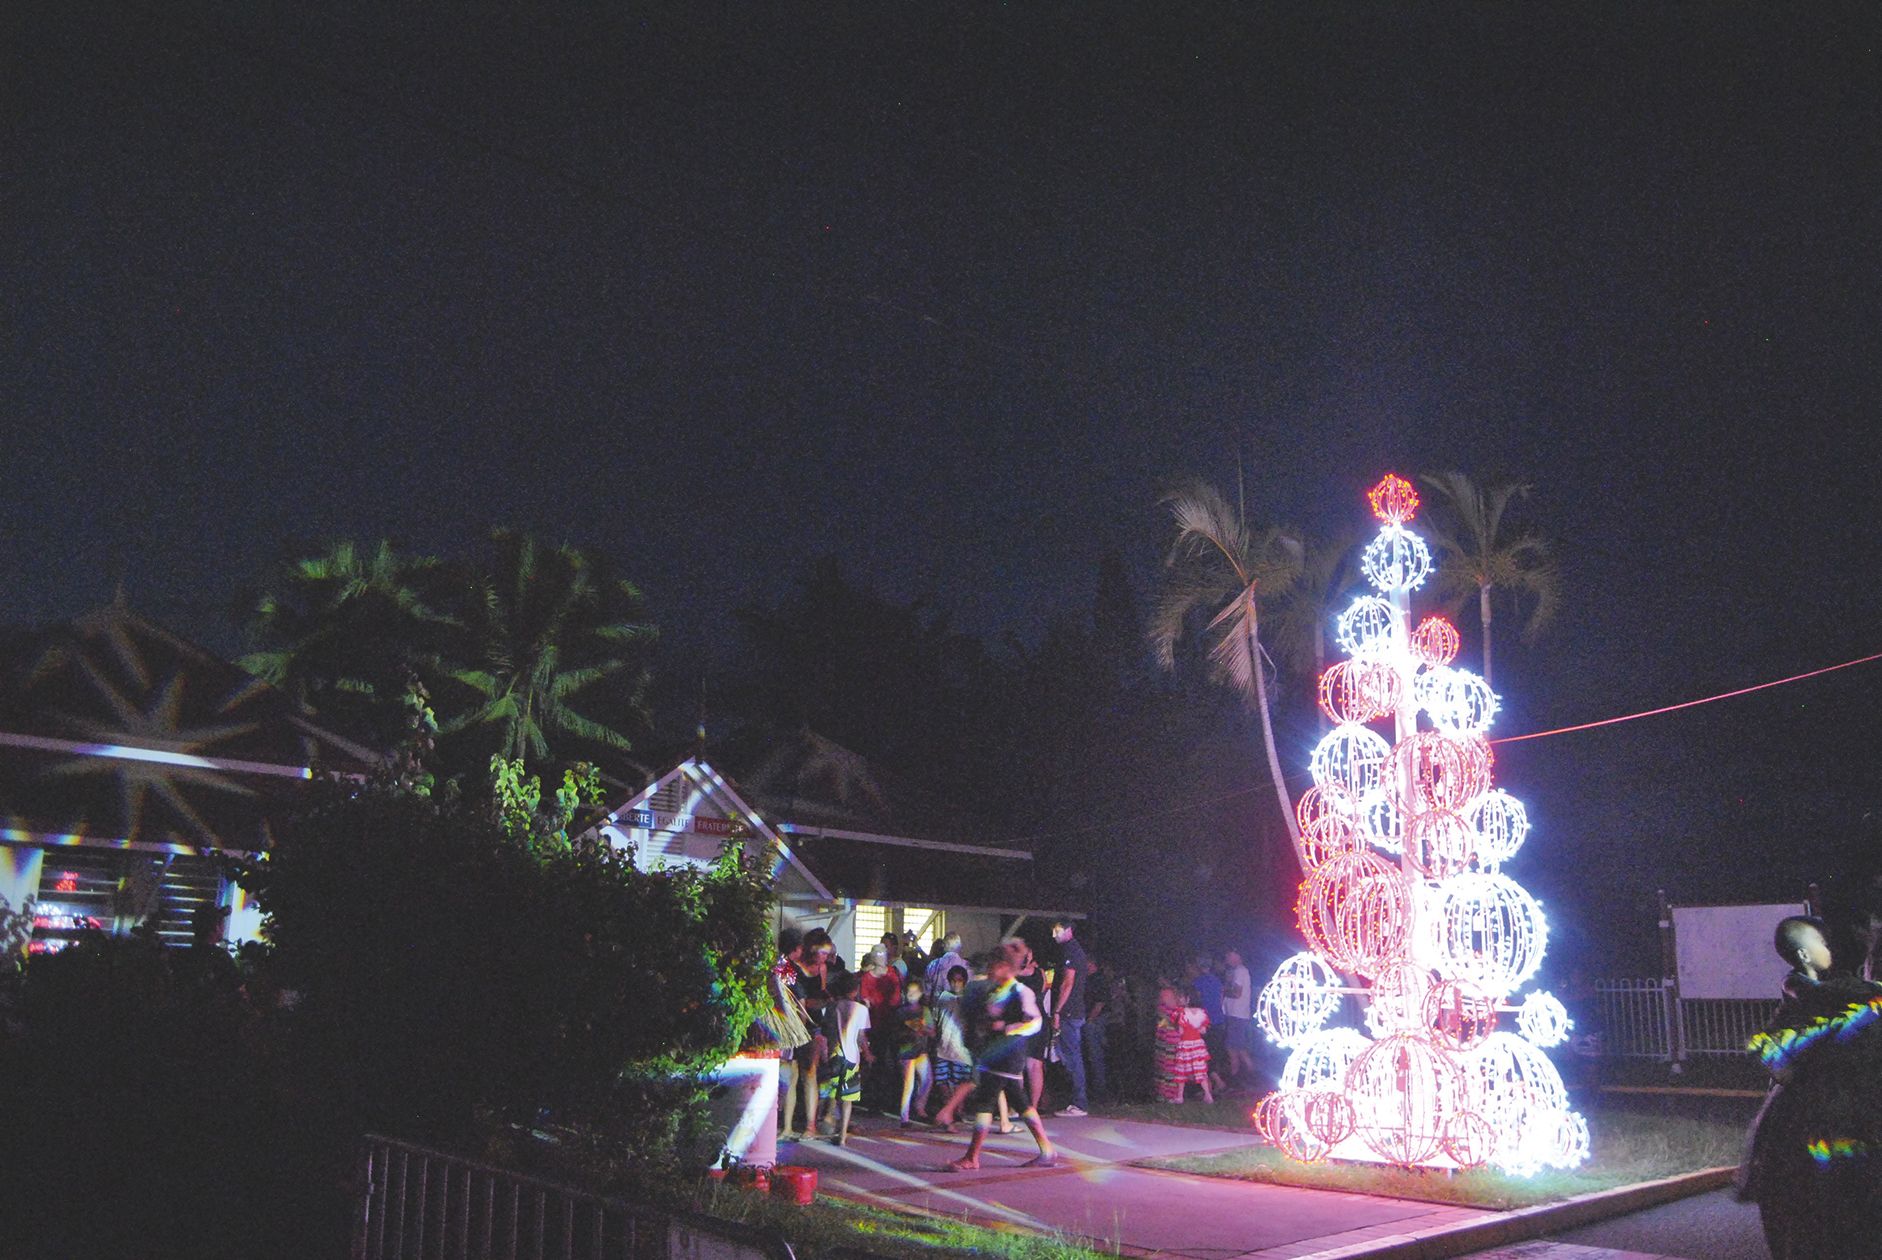 Les administrés de la commune étaient conviés au lancement des illuminations de Noël, avec de nouvelles décorations confectionnées à la main par Ludivine et Alexandra,  employées de la commune. Le maire a annoncé, par la même occasion, l’ouverture  du con